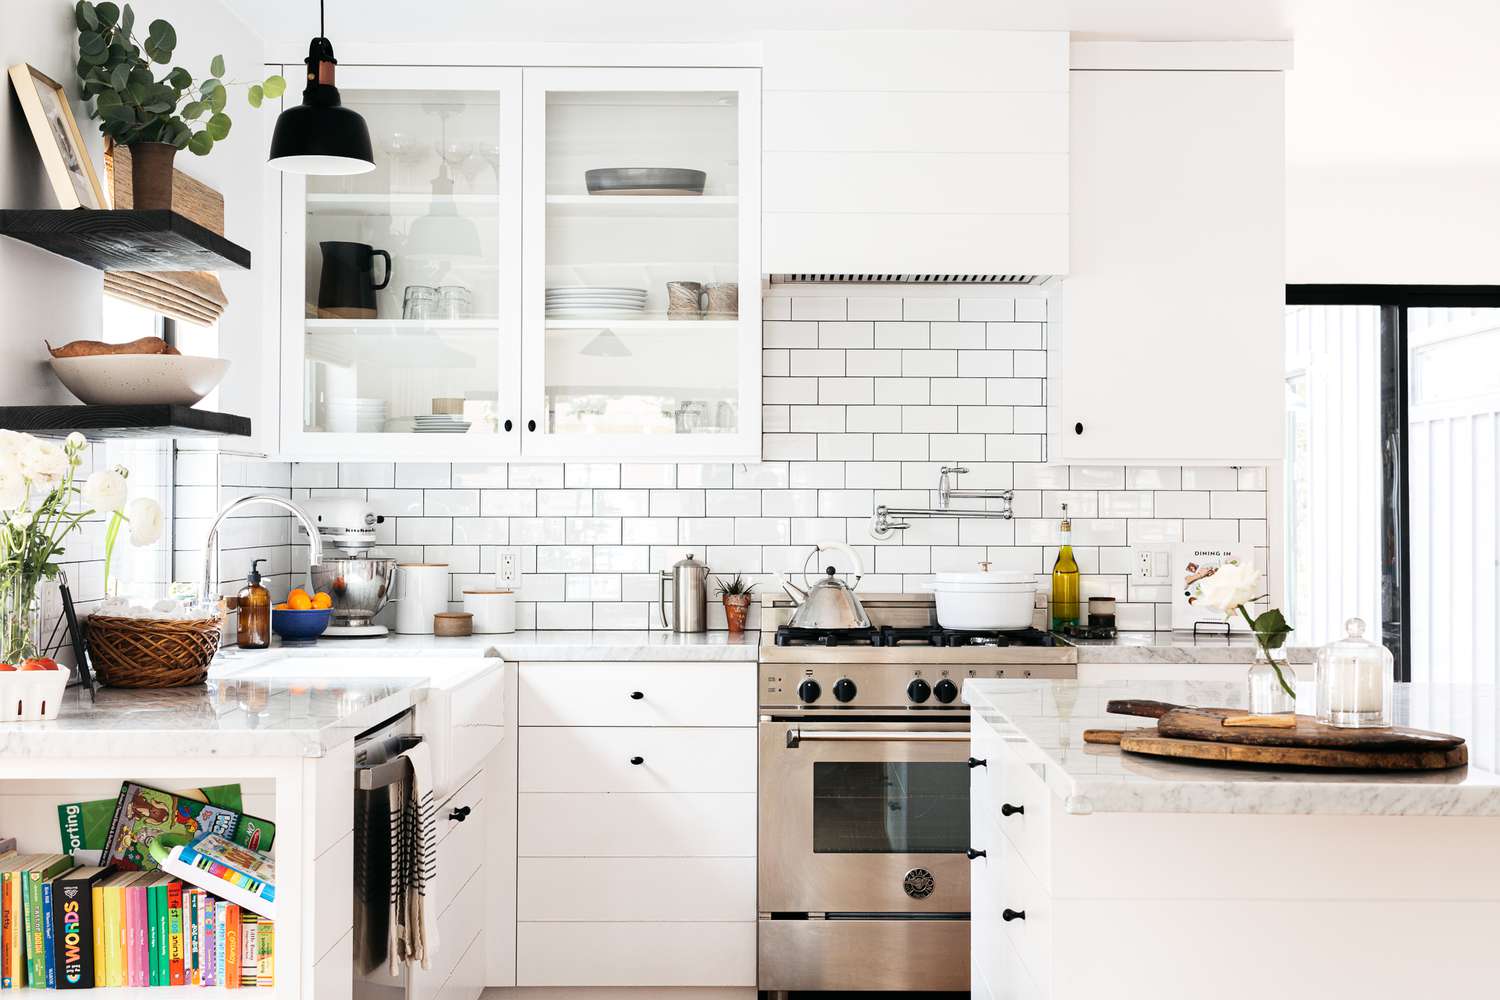 Cozinha branca moderna decorada com parede de tijolos atrás do forno de aço inoxidável